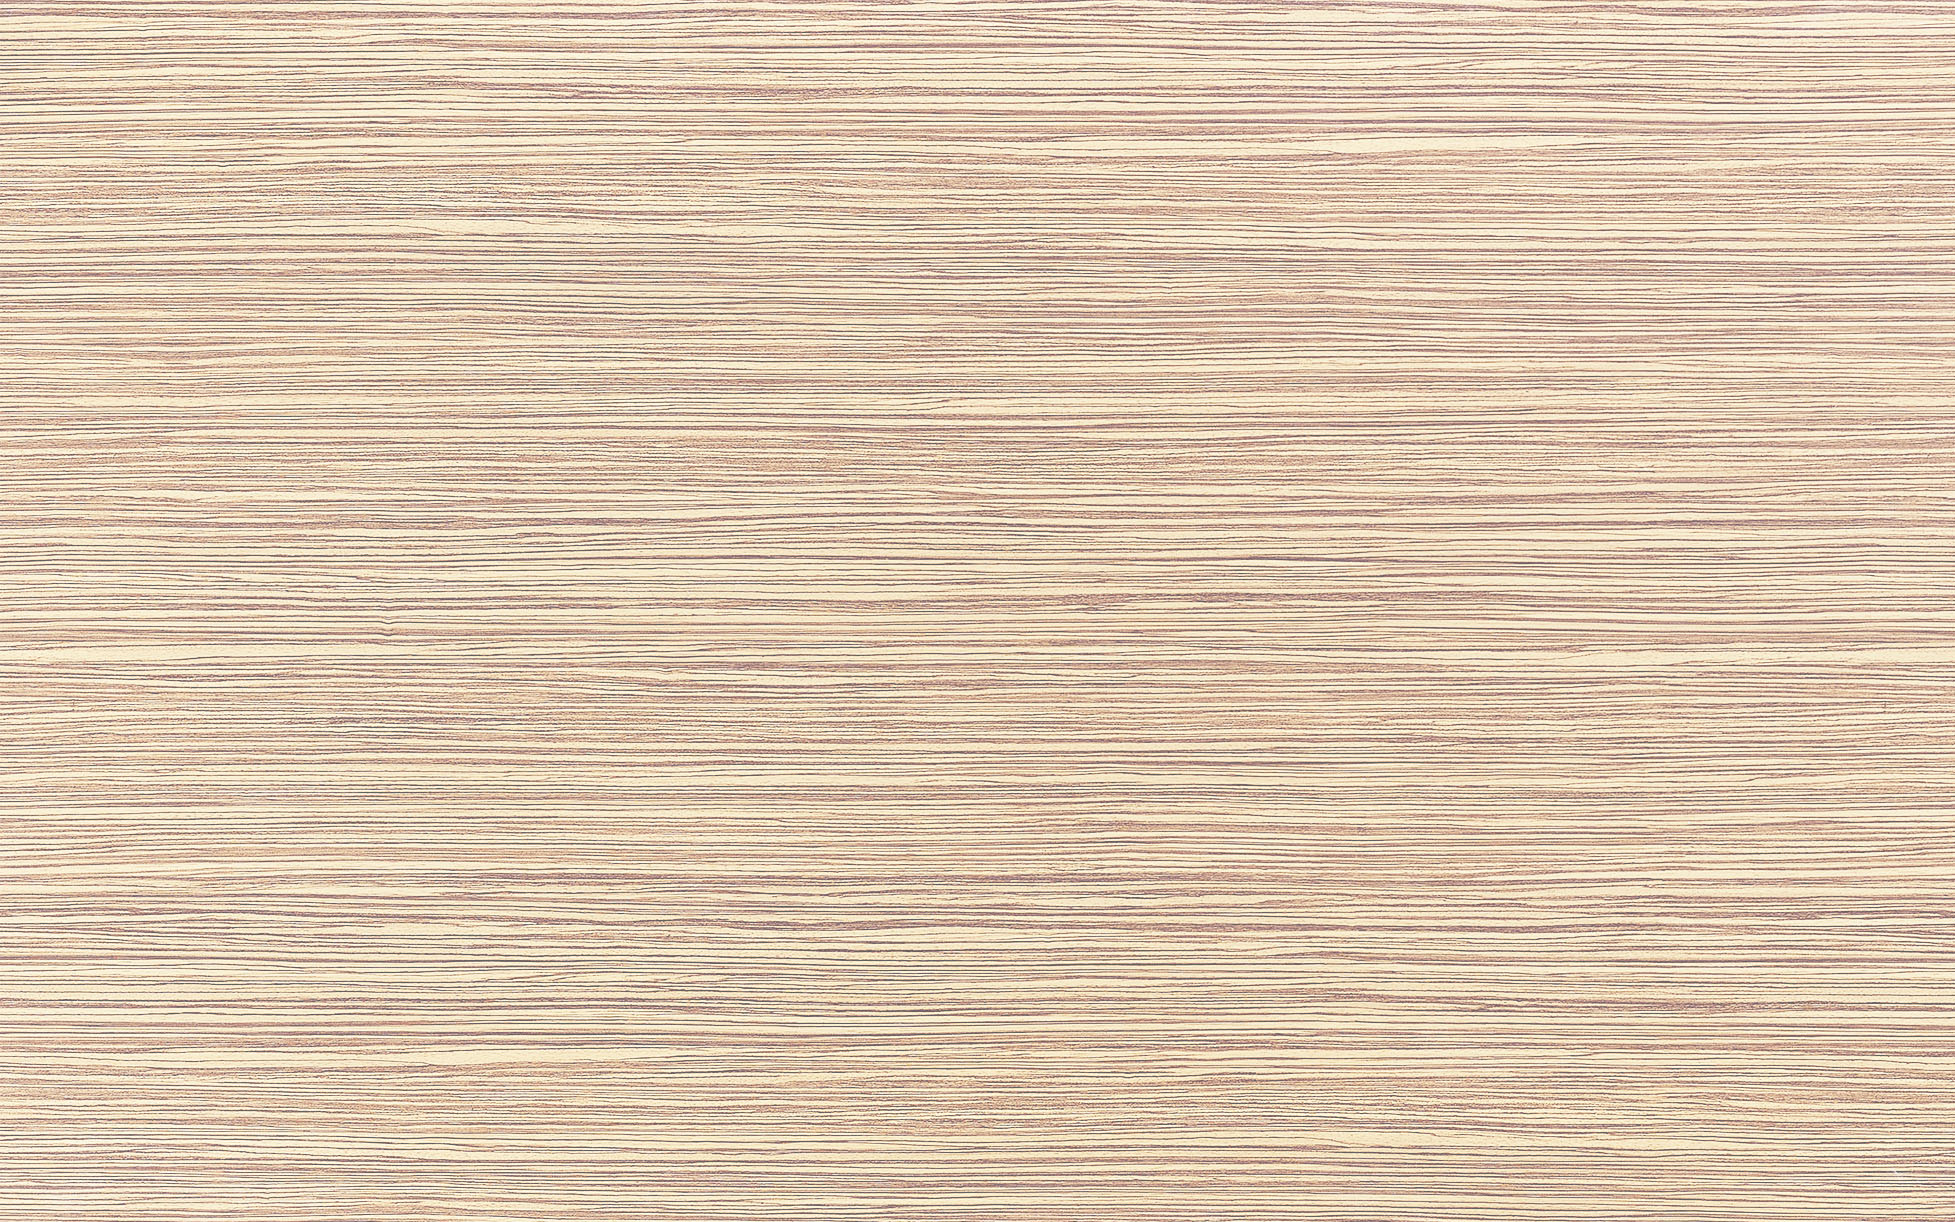 Плитка Cypress vanilla 25х40, 00-00-5-09-01-11-2810